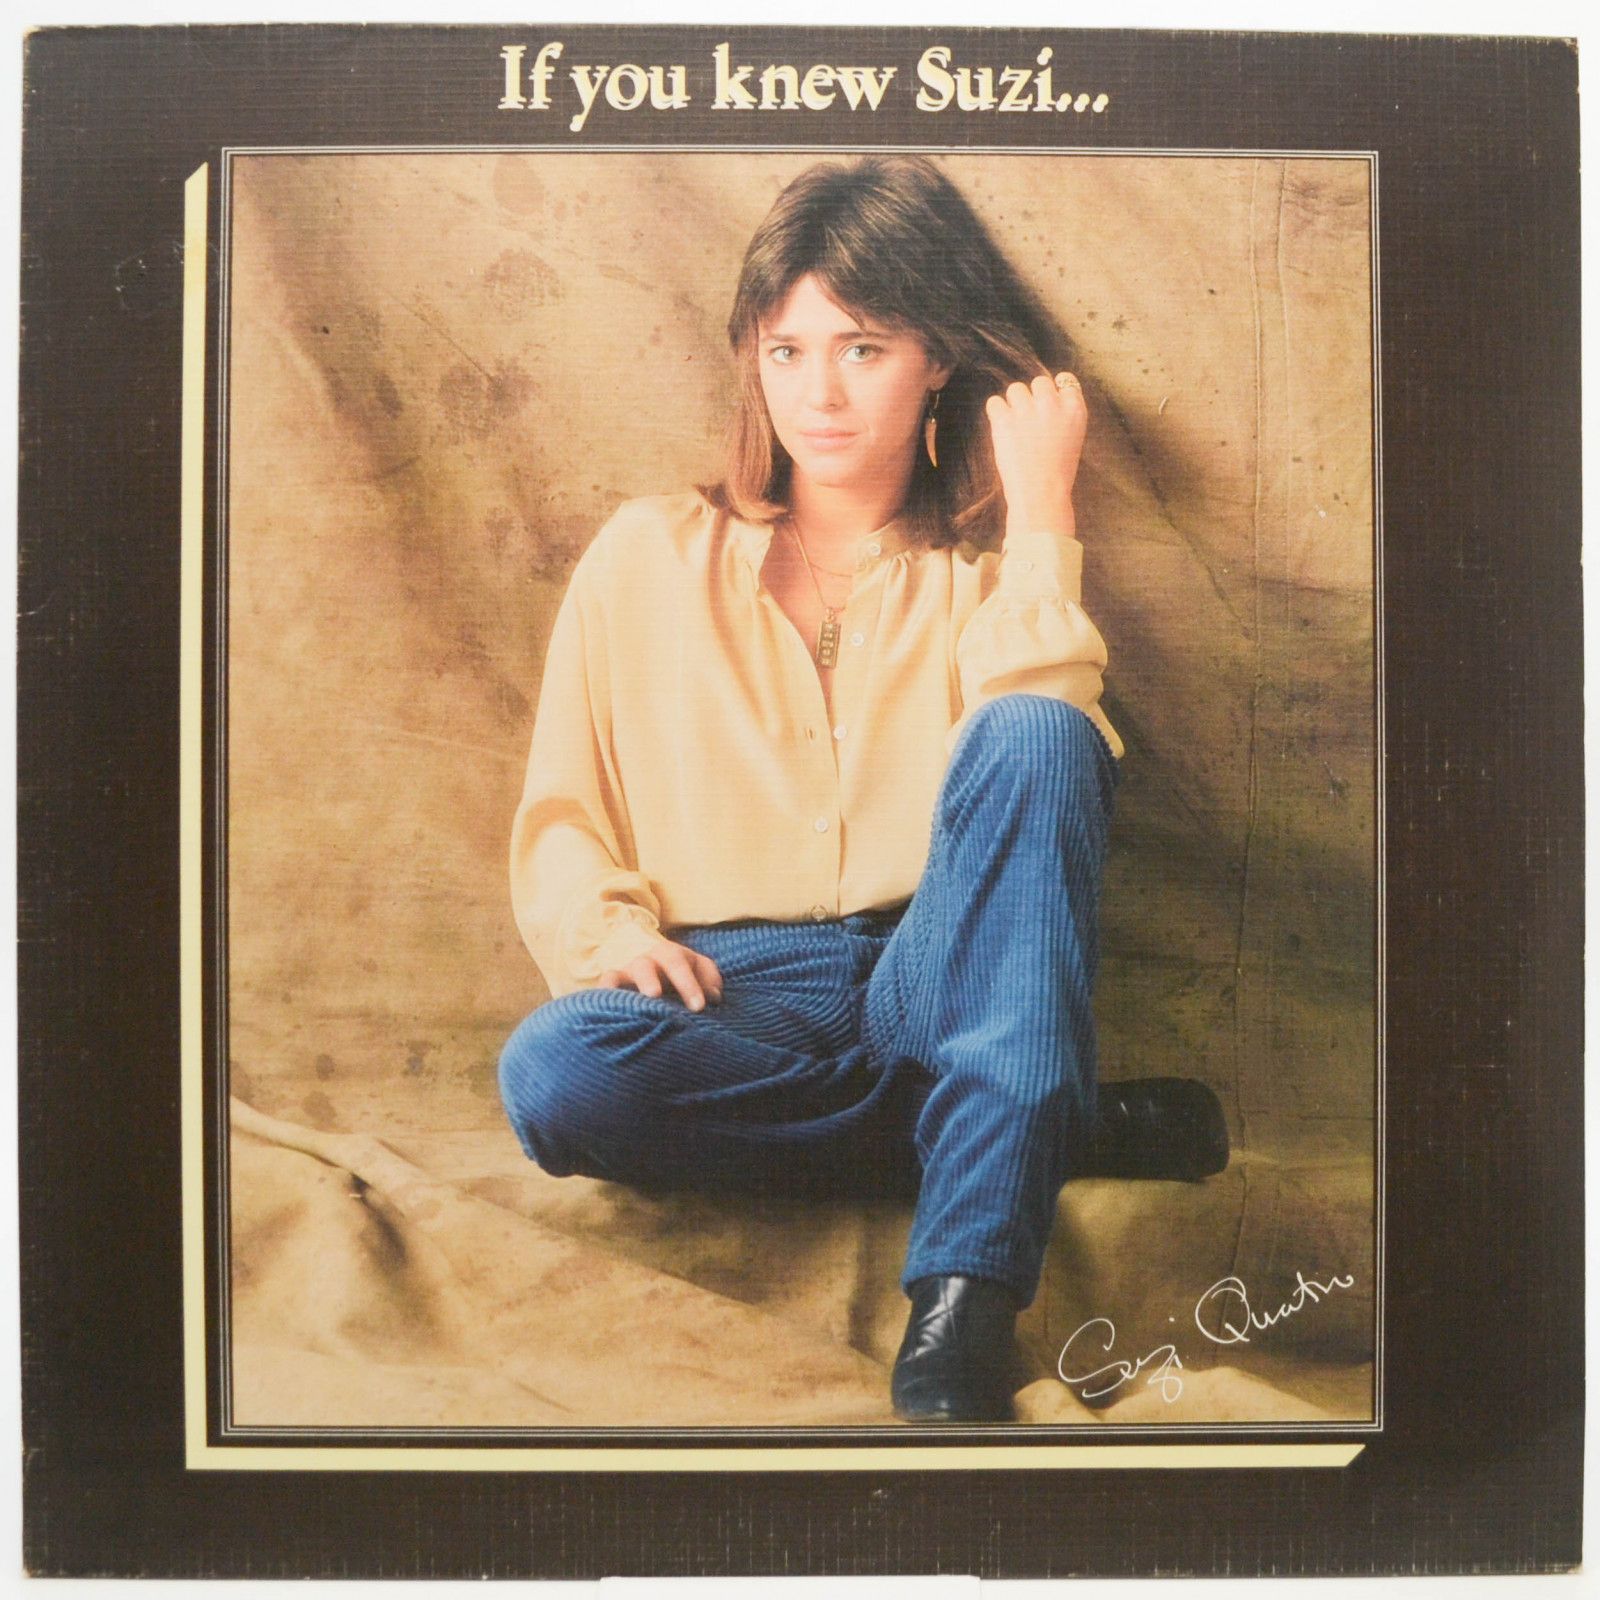 Suzi Quatro — If You Knew Suzi..., 1978